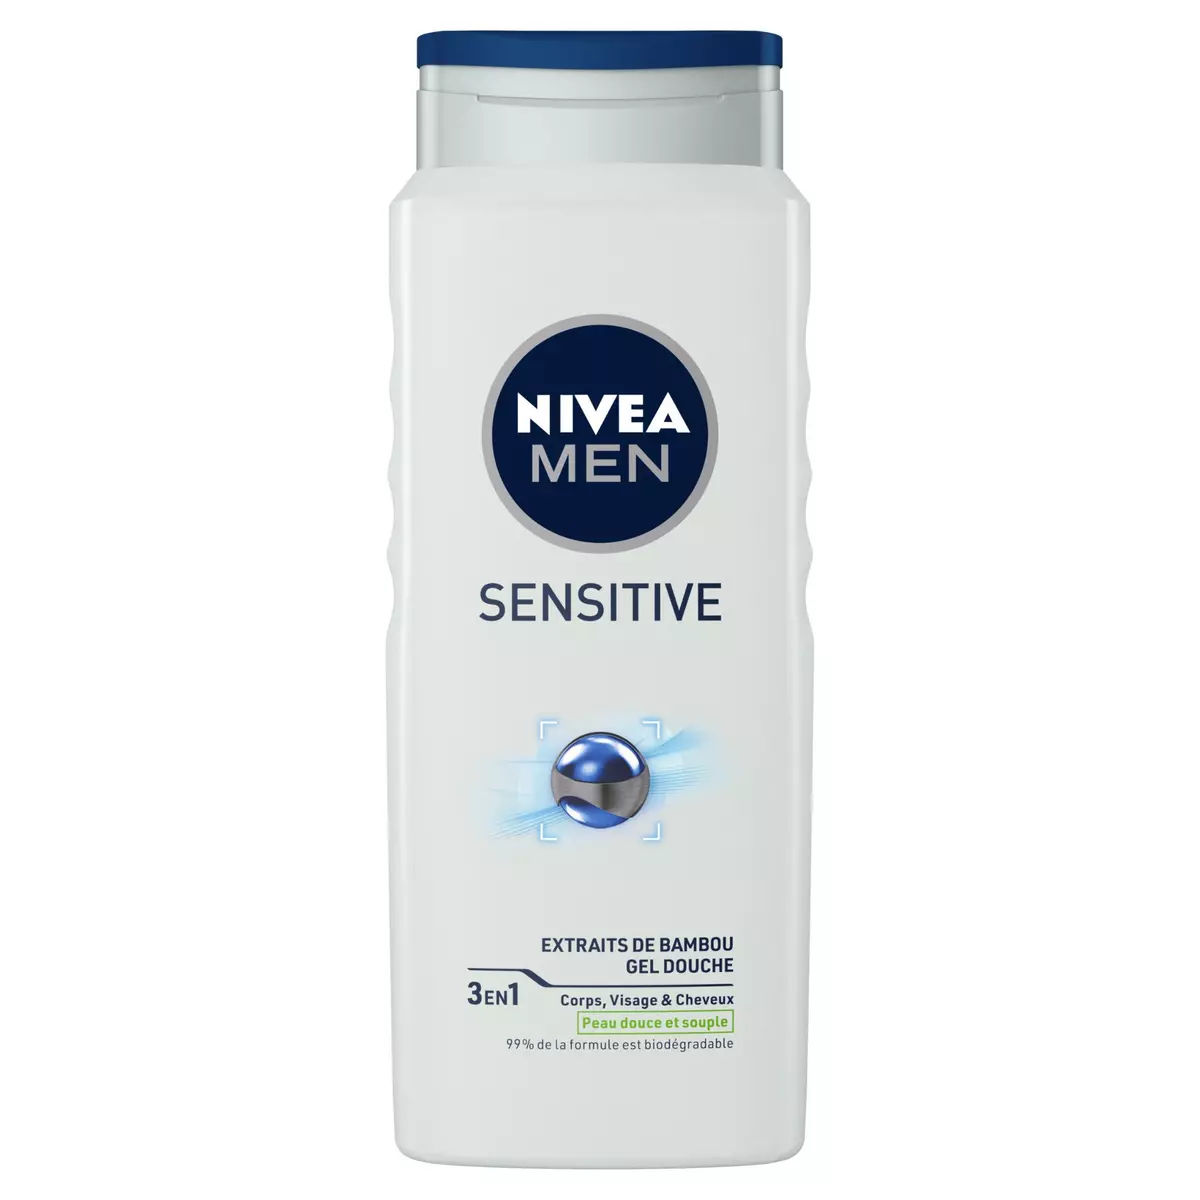 NIVEA MEN Sensitive Gel douche peau sensible extrait de bambou corps visage et cheveux 500ml